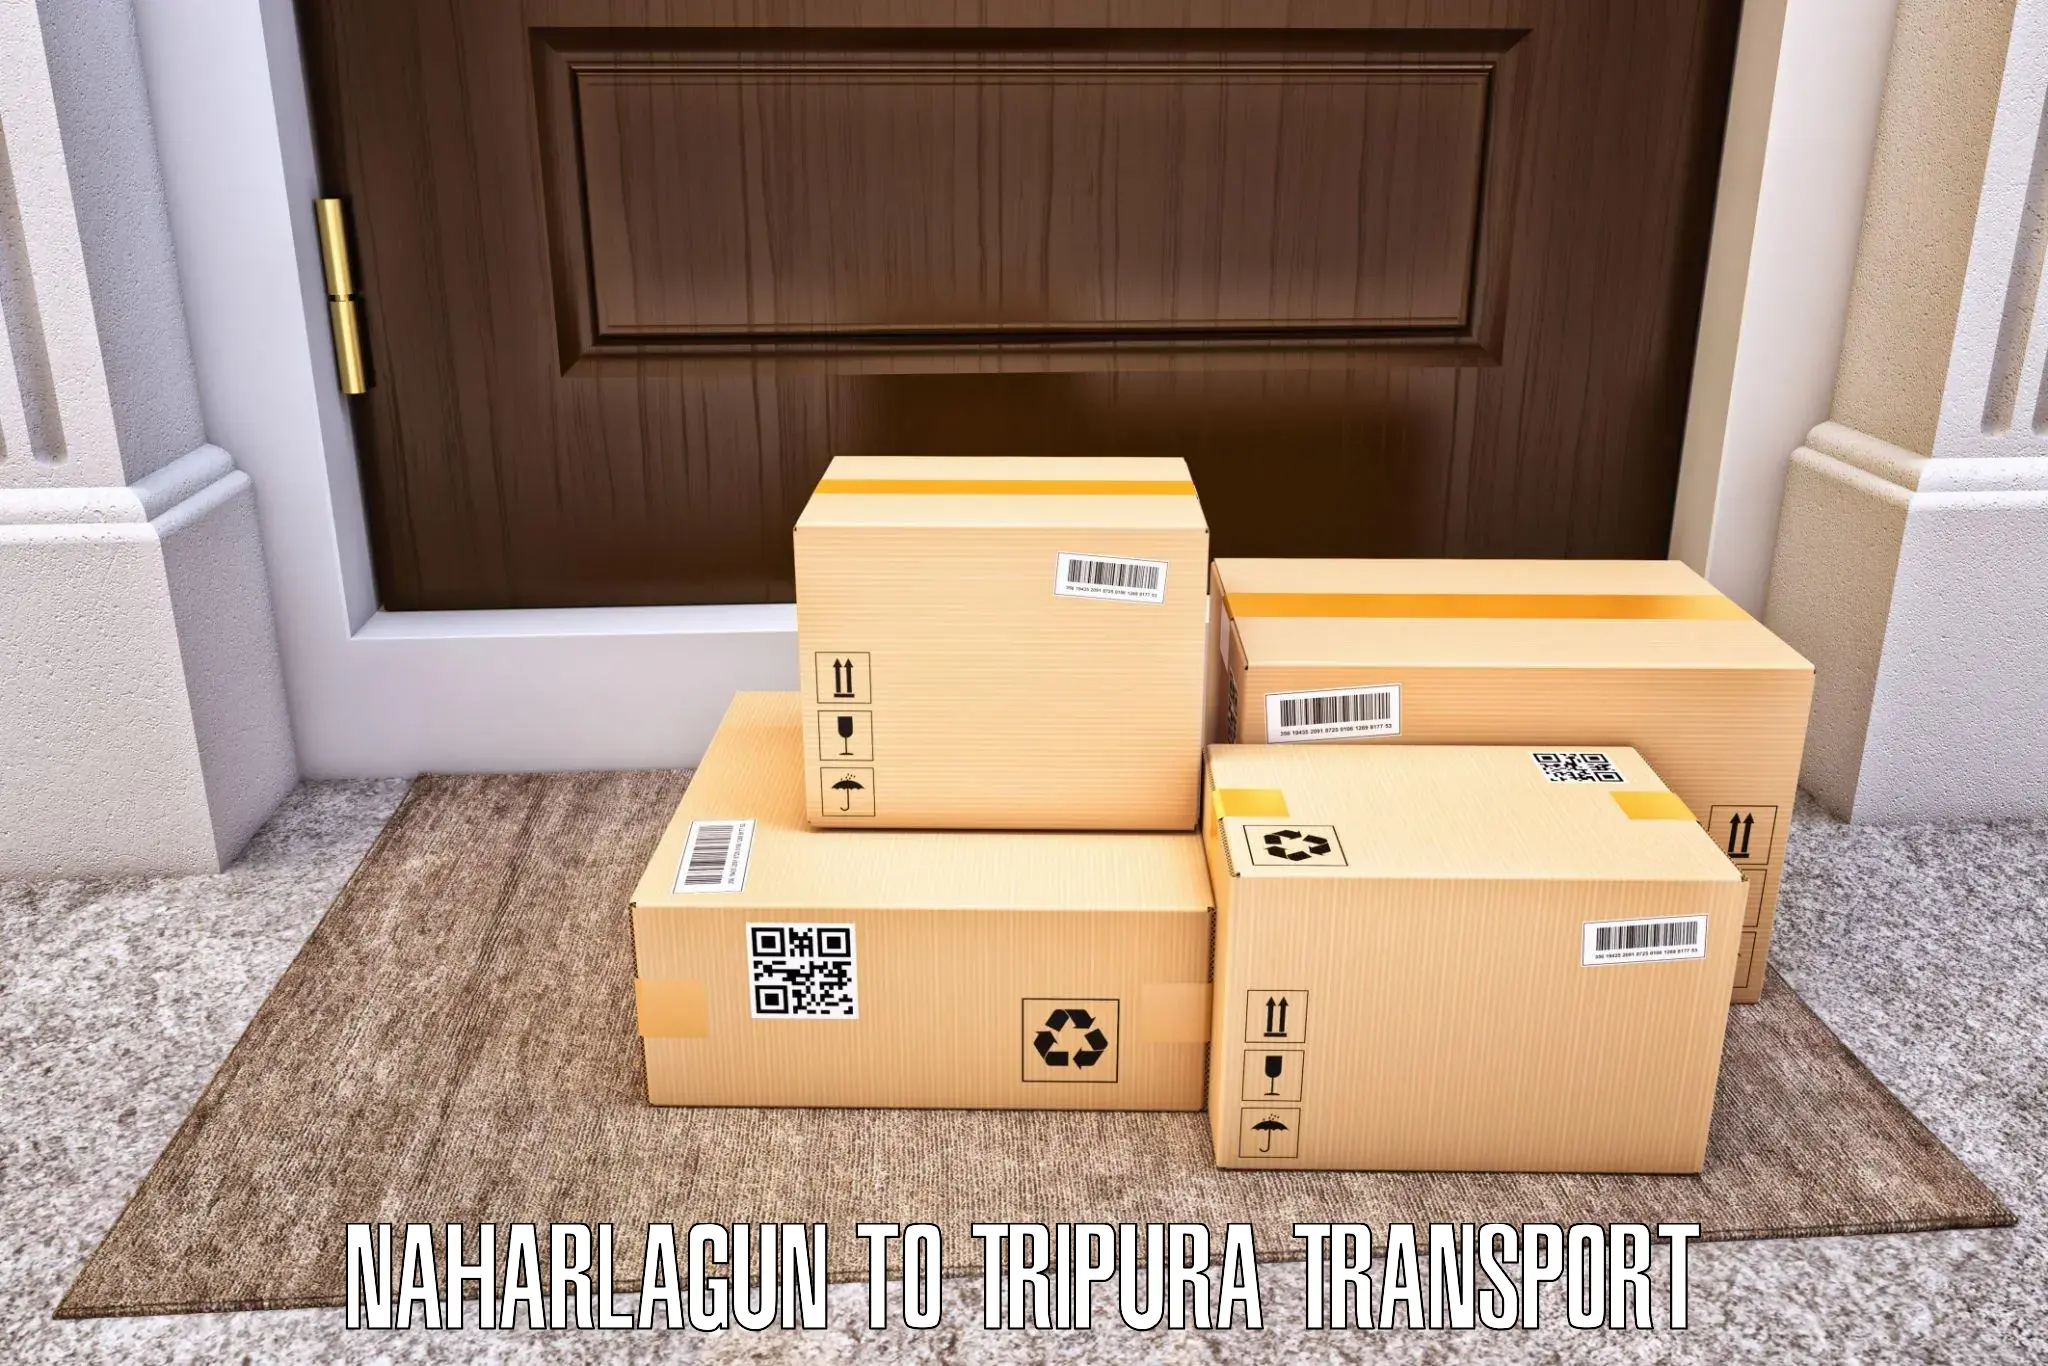 Vehicle courier services in Naharlagun to Ambassa